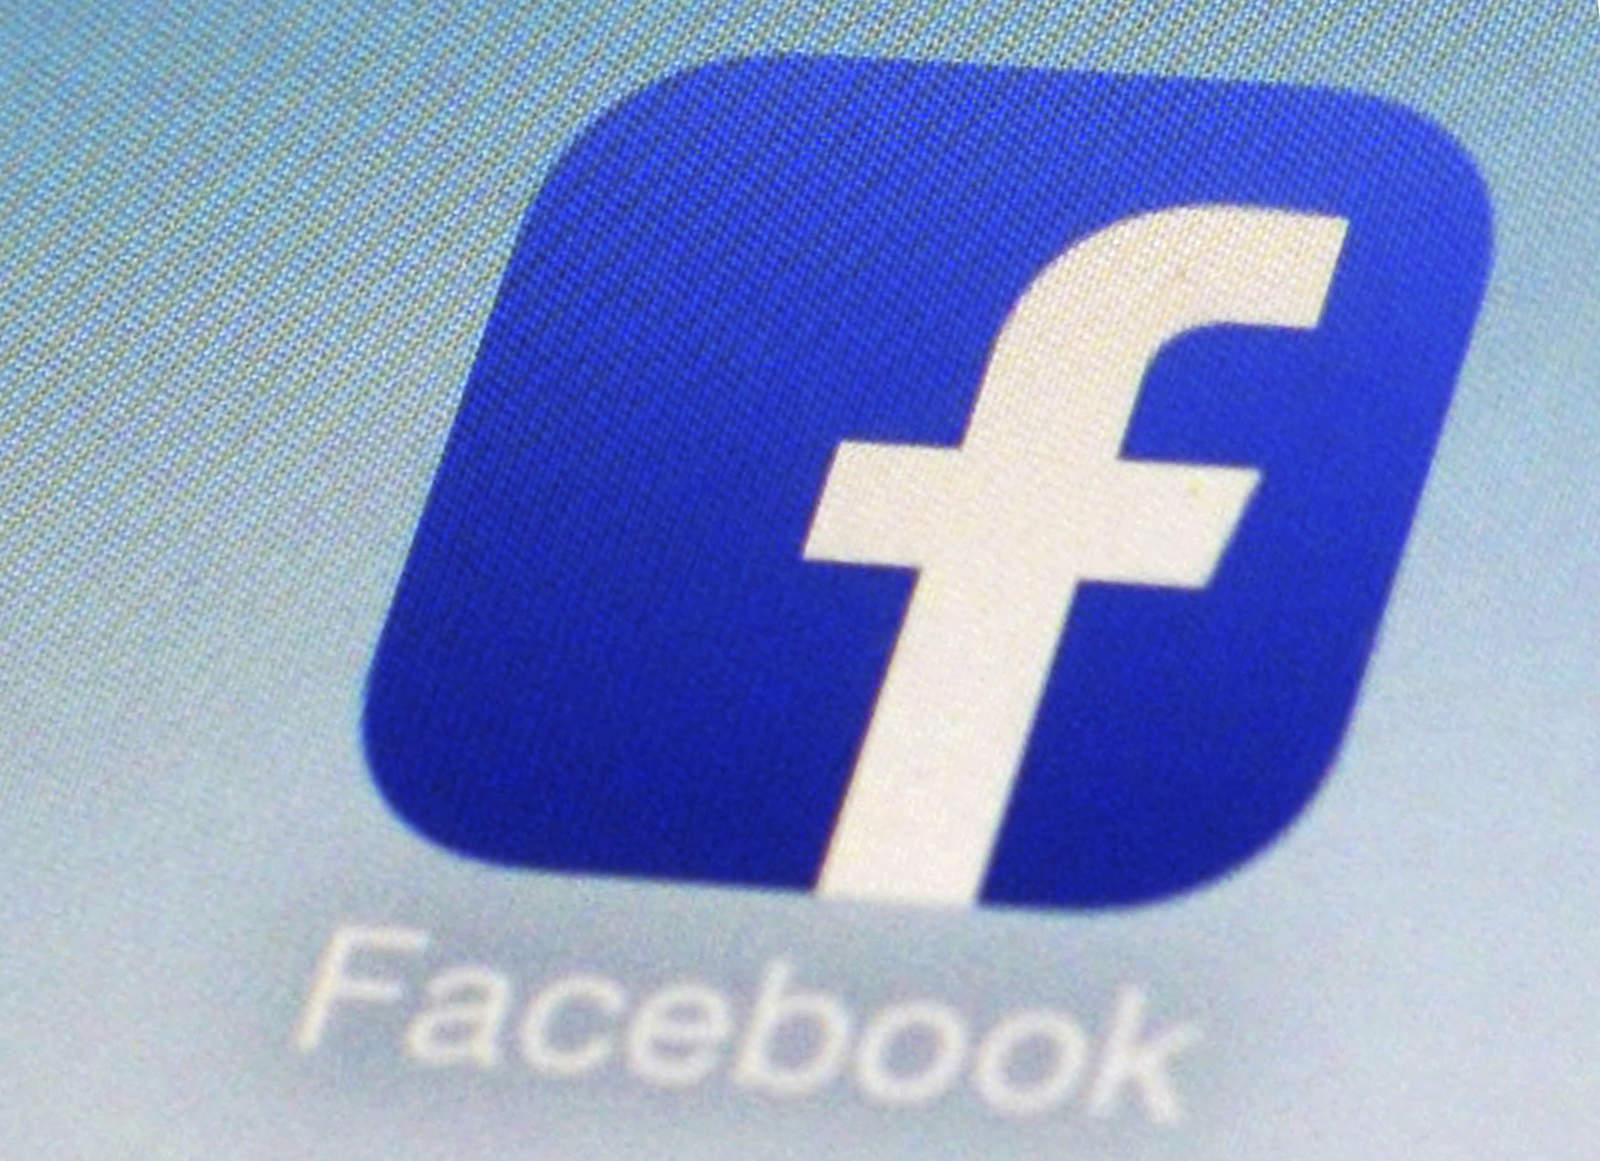 Usuarios reportan falla de Facebook en México y otros países. Noticias en tiempo real